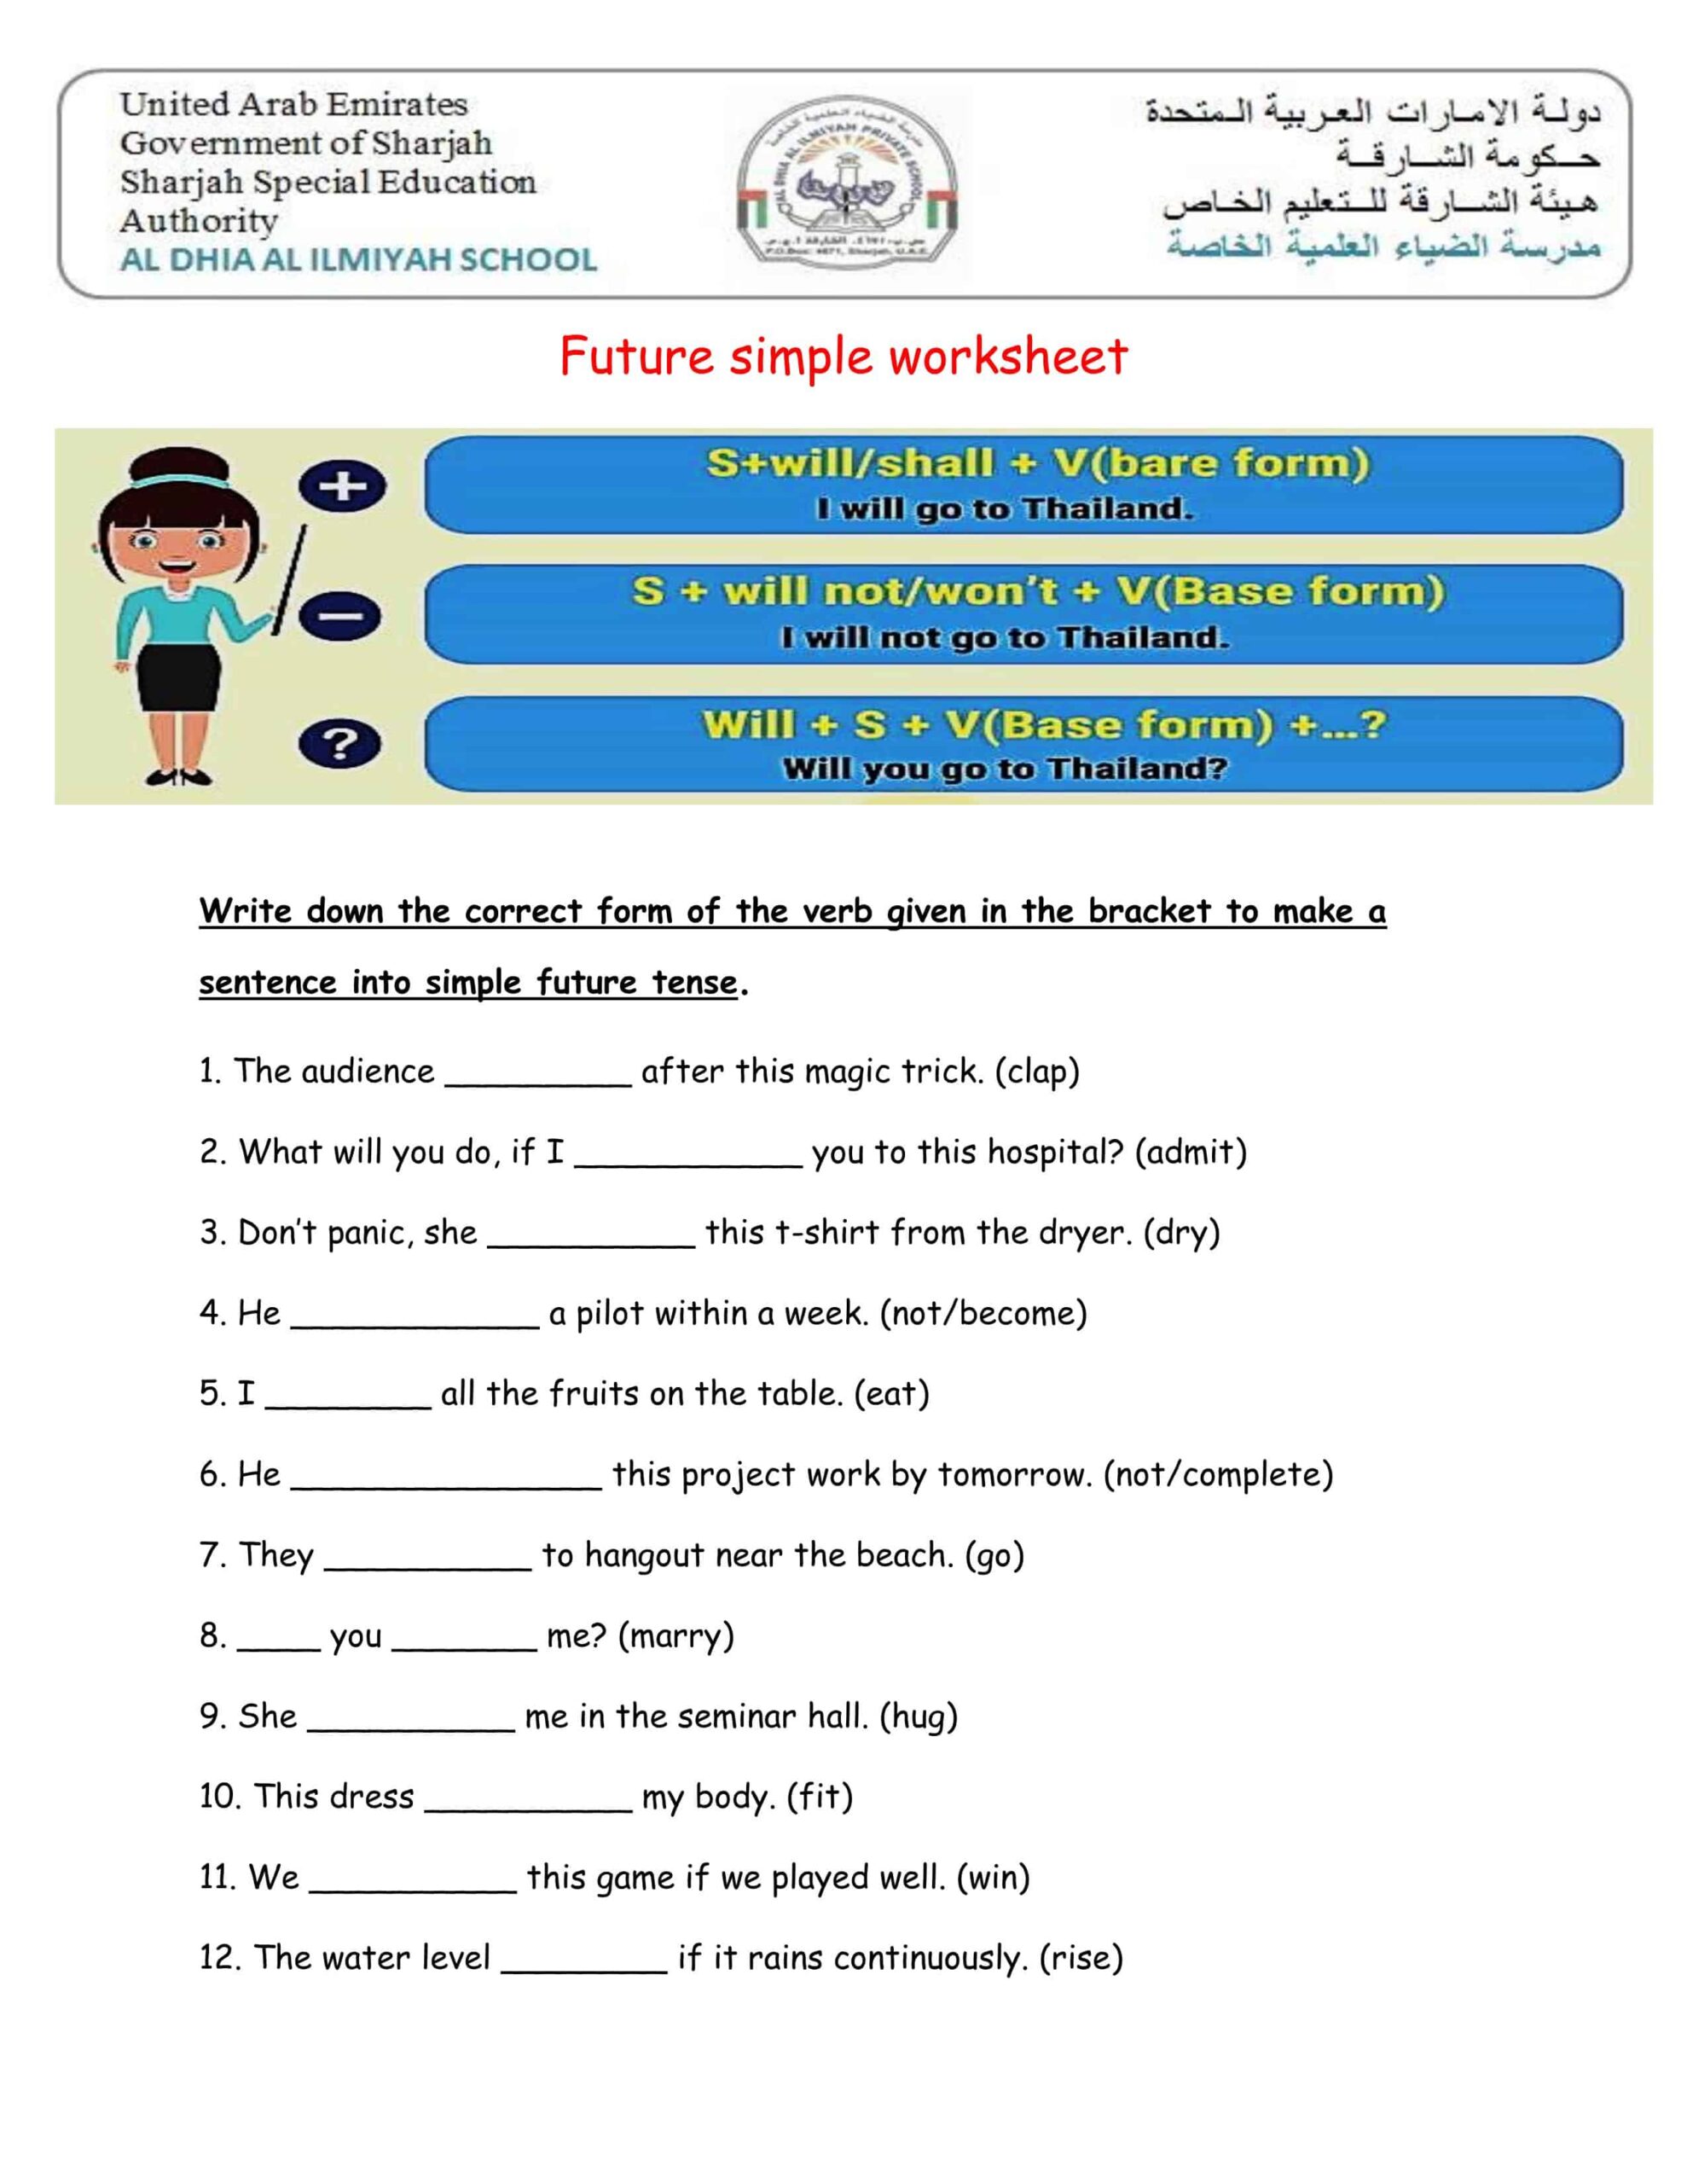 أوراق عمل Future simple worksheet اللغة الإنجليزية الصف الخامس 